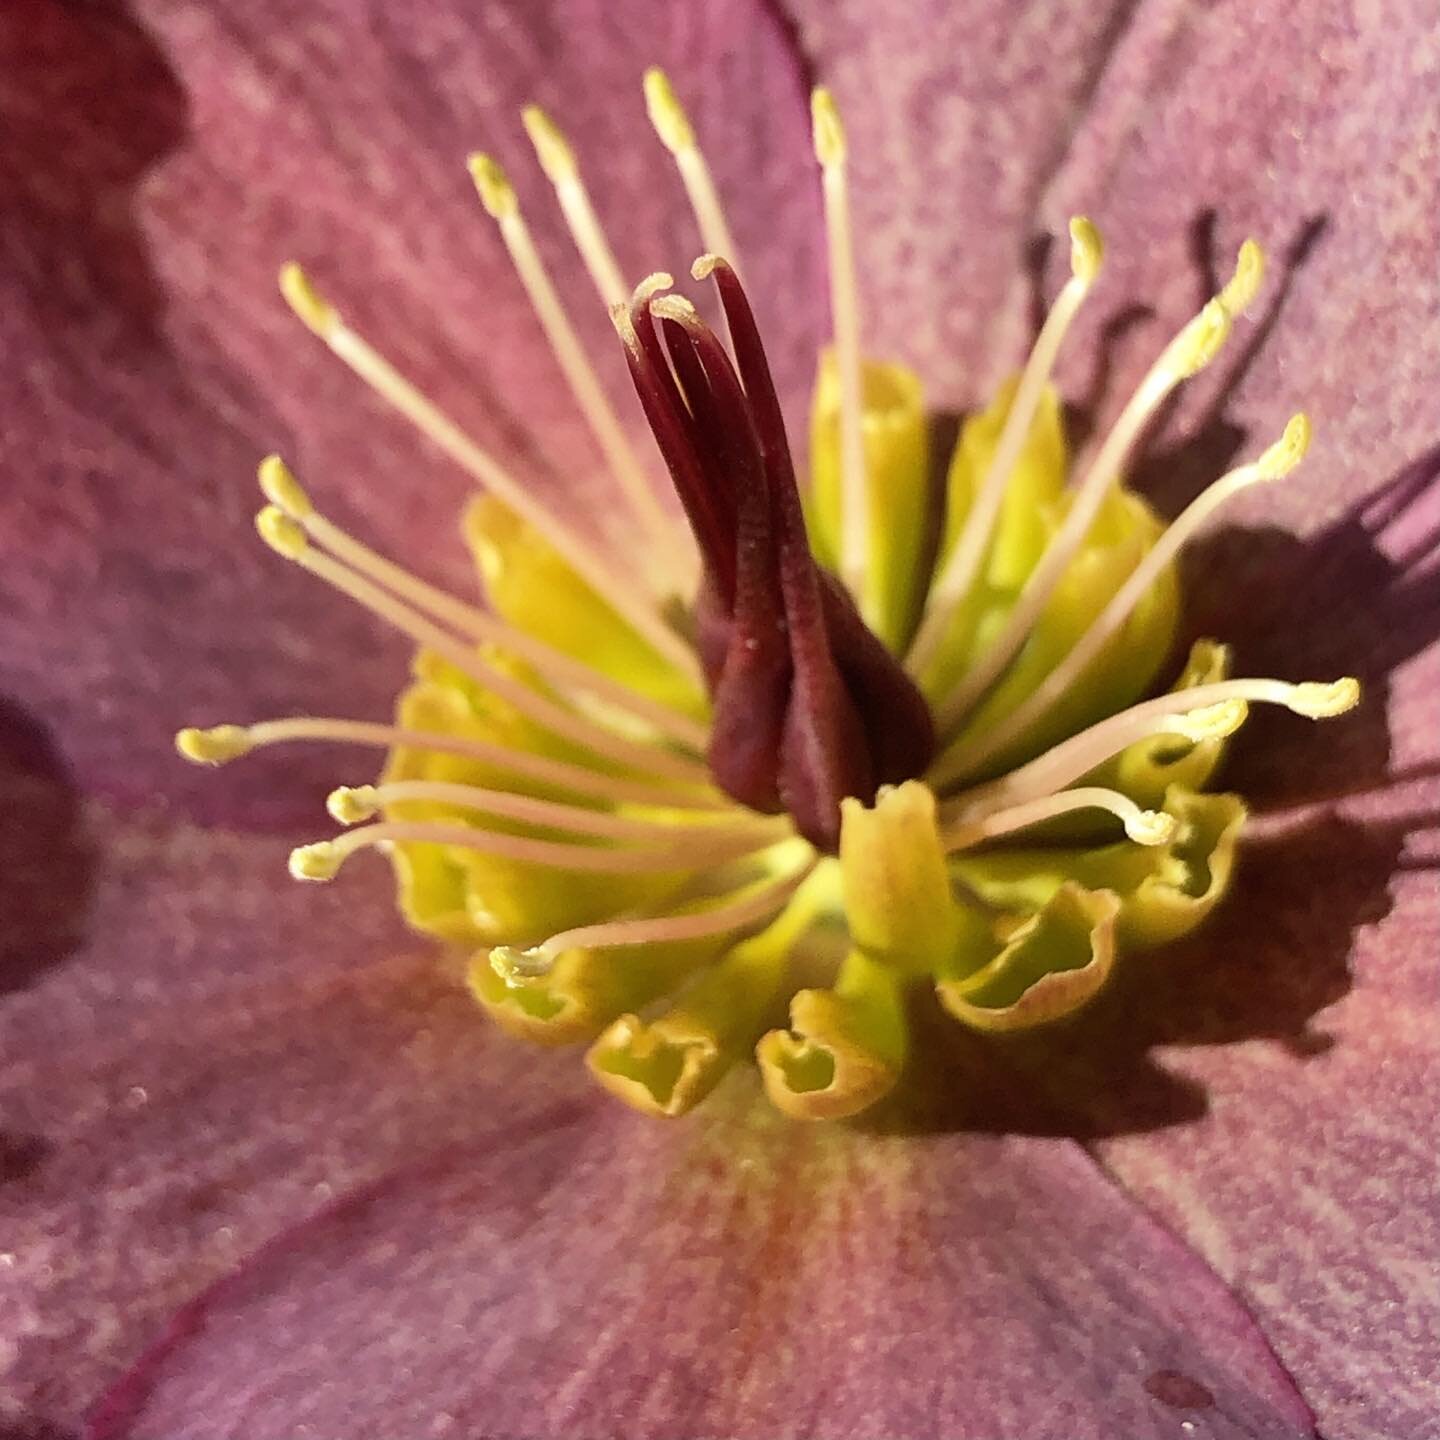 #spring #macro #flower #macrophotography #macroflower